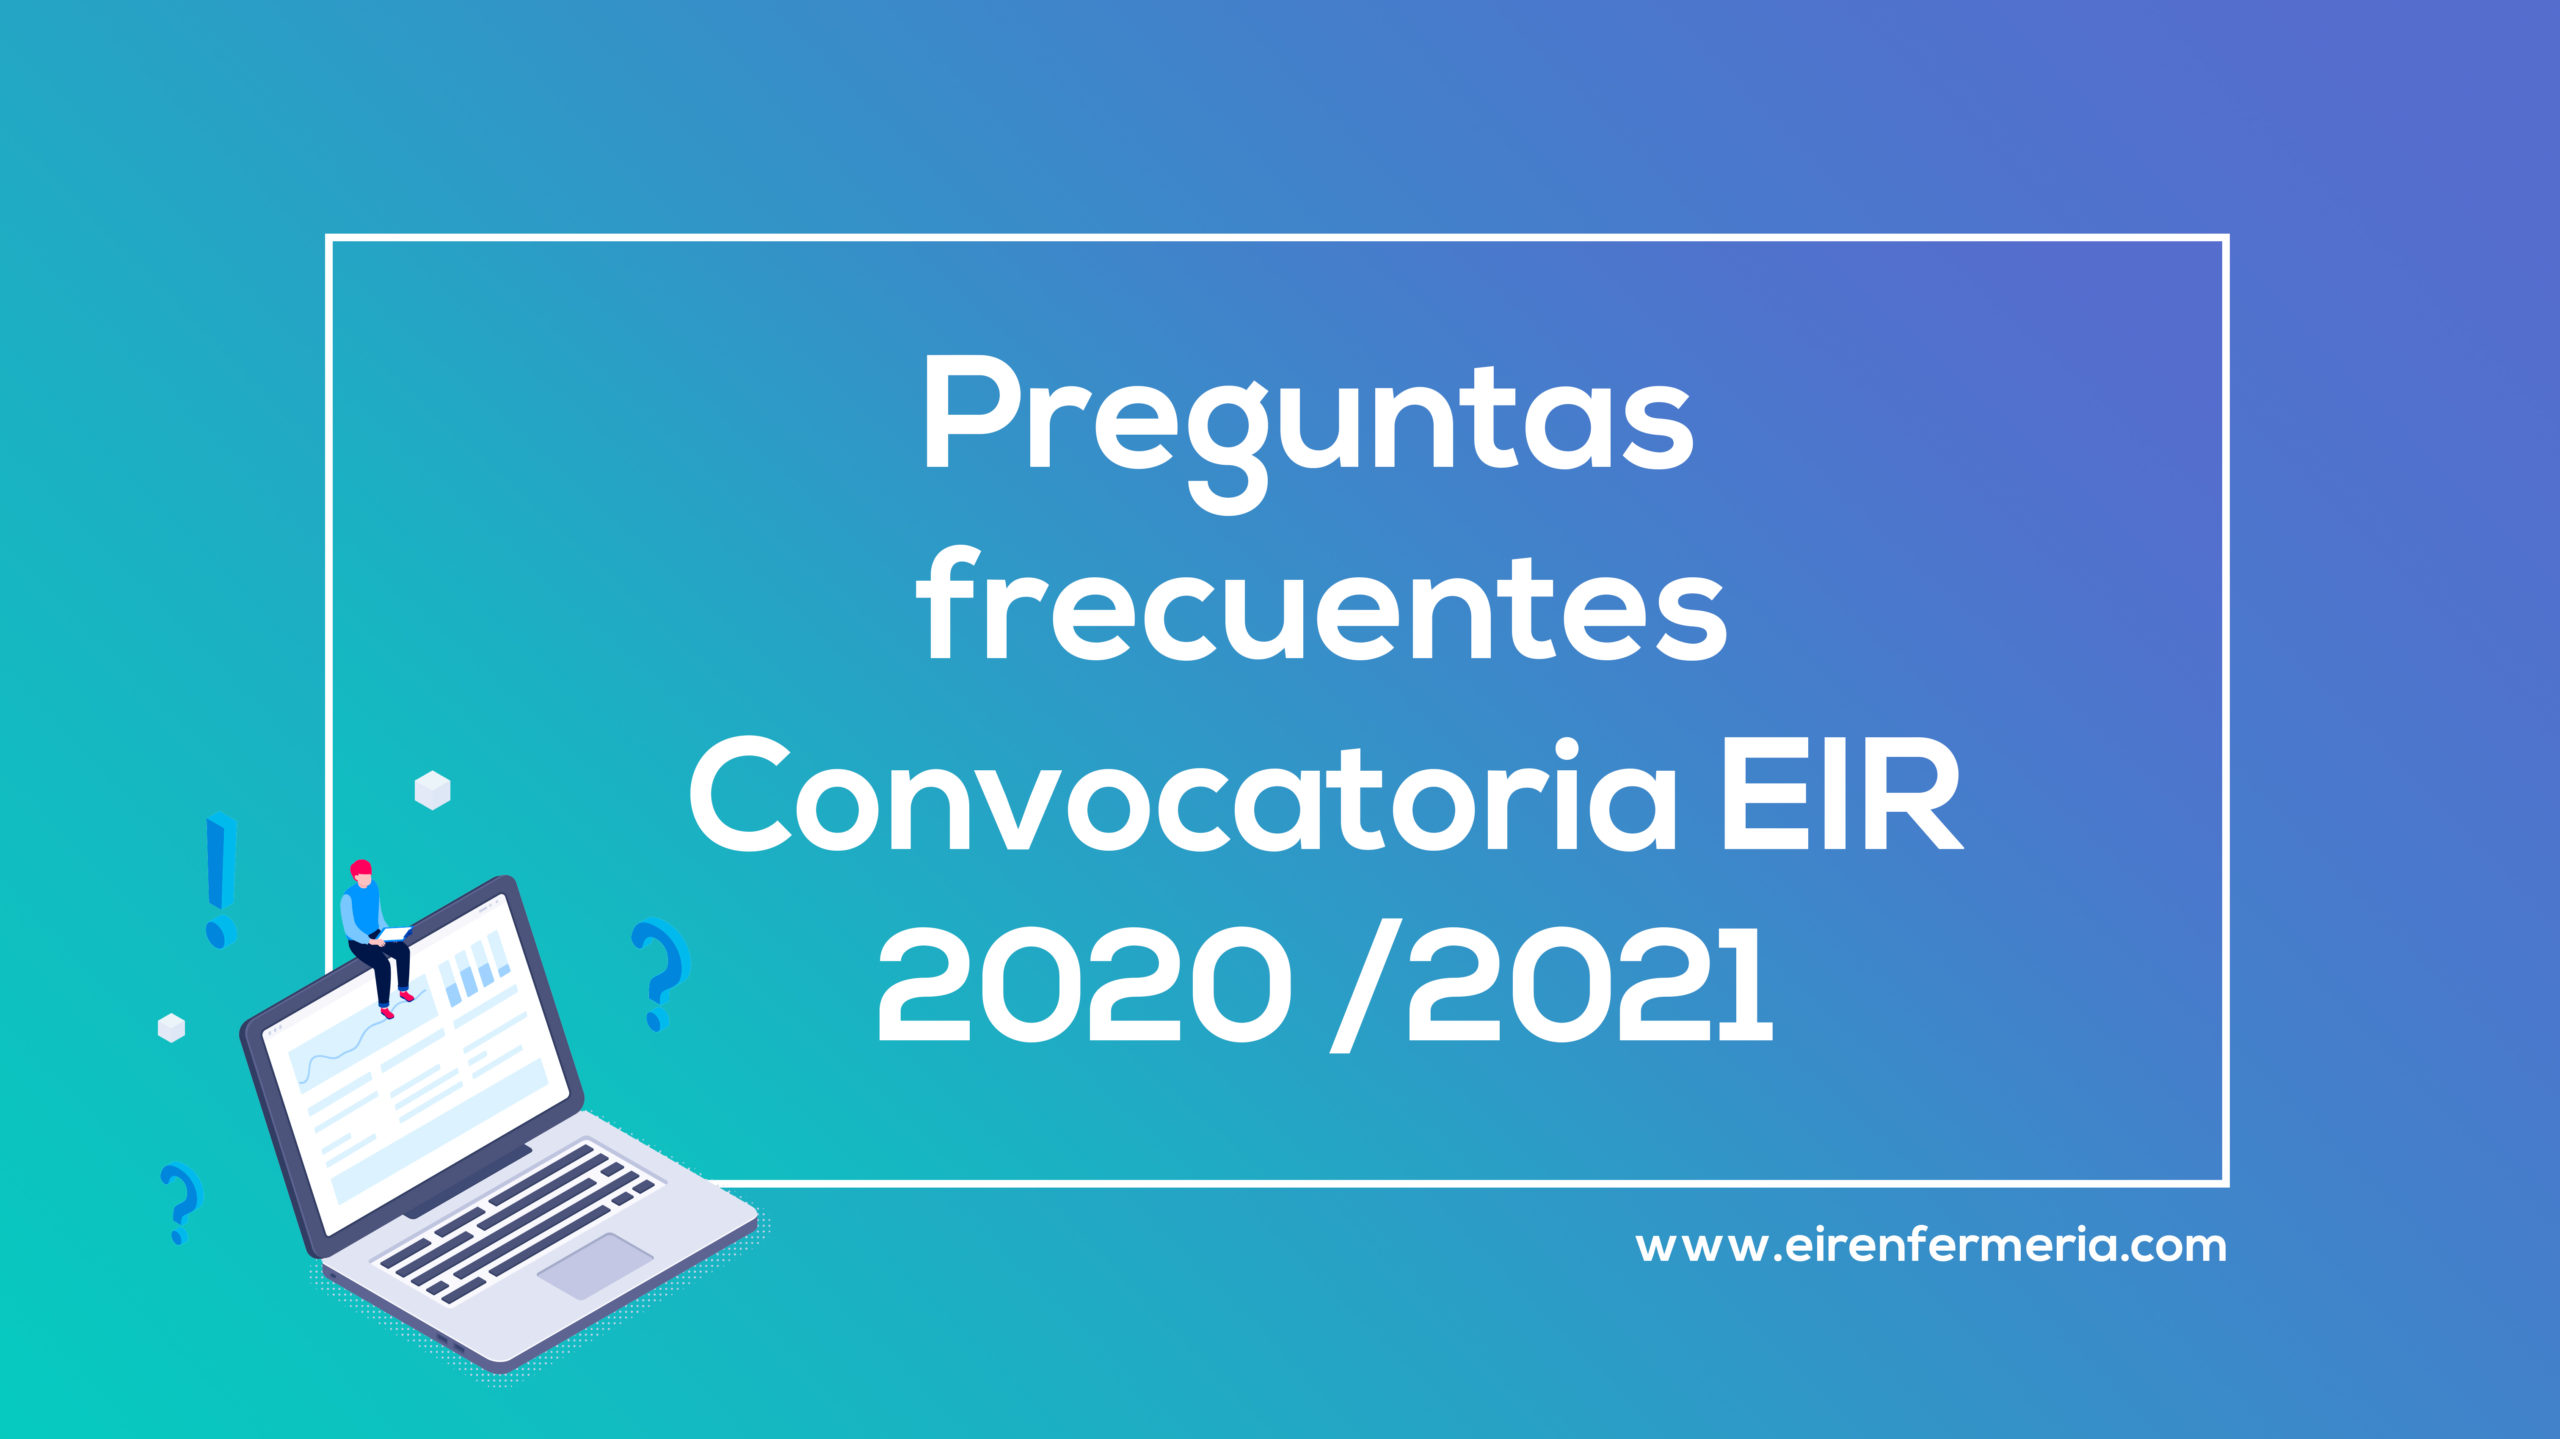 Dudas y preguntas frecuentes sobre EIR 2020/2021